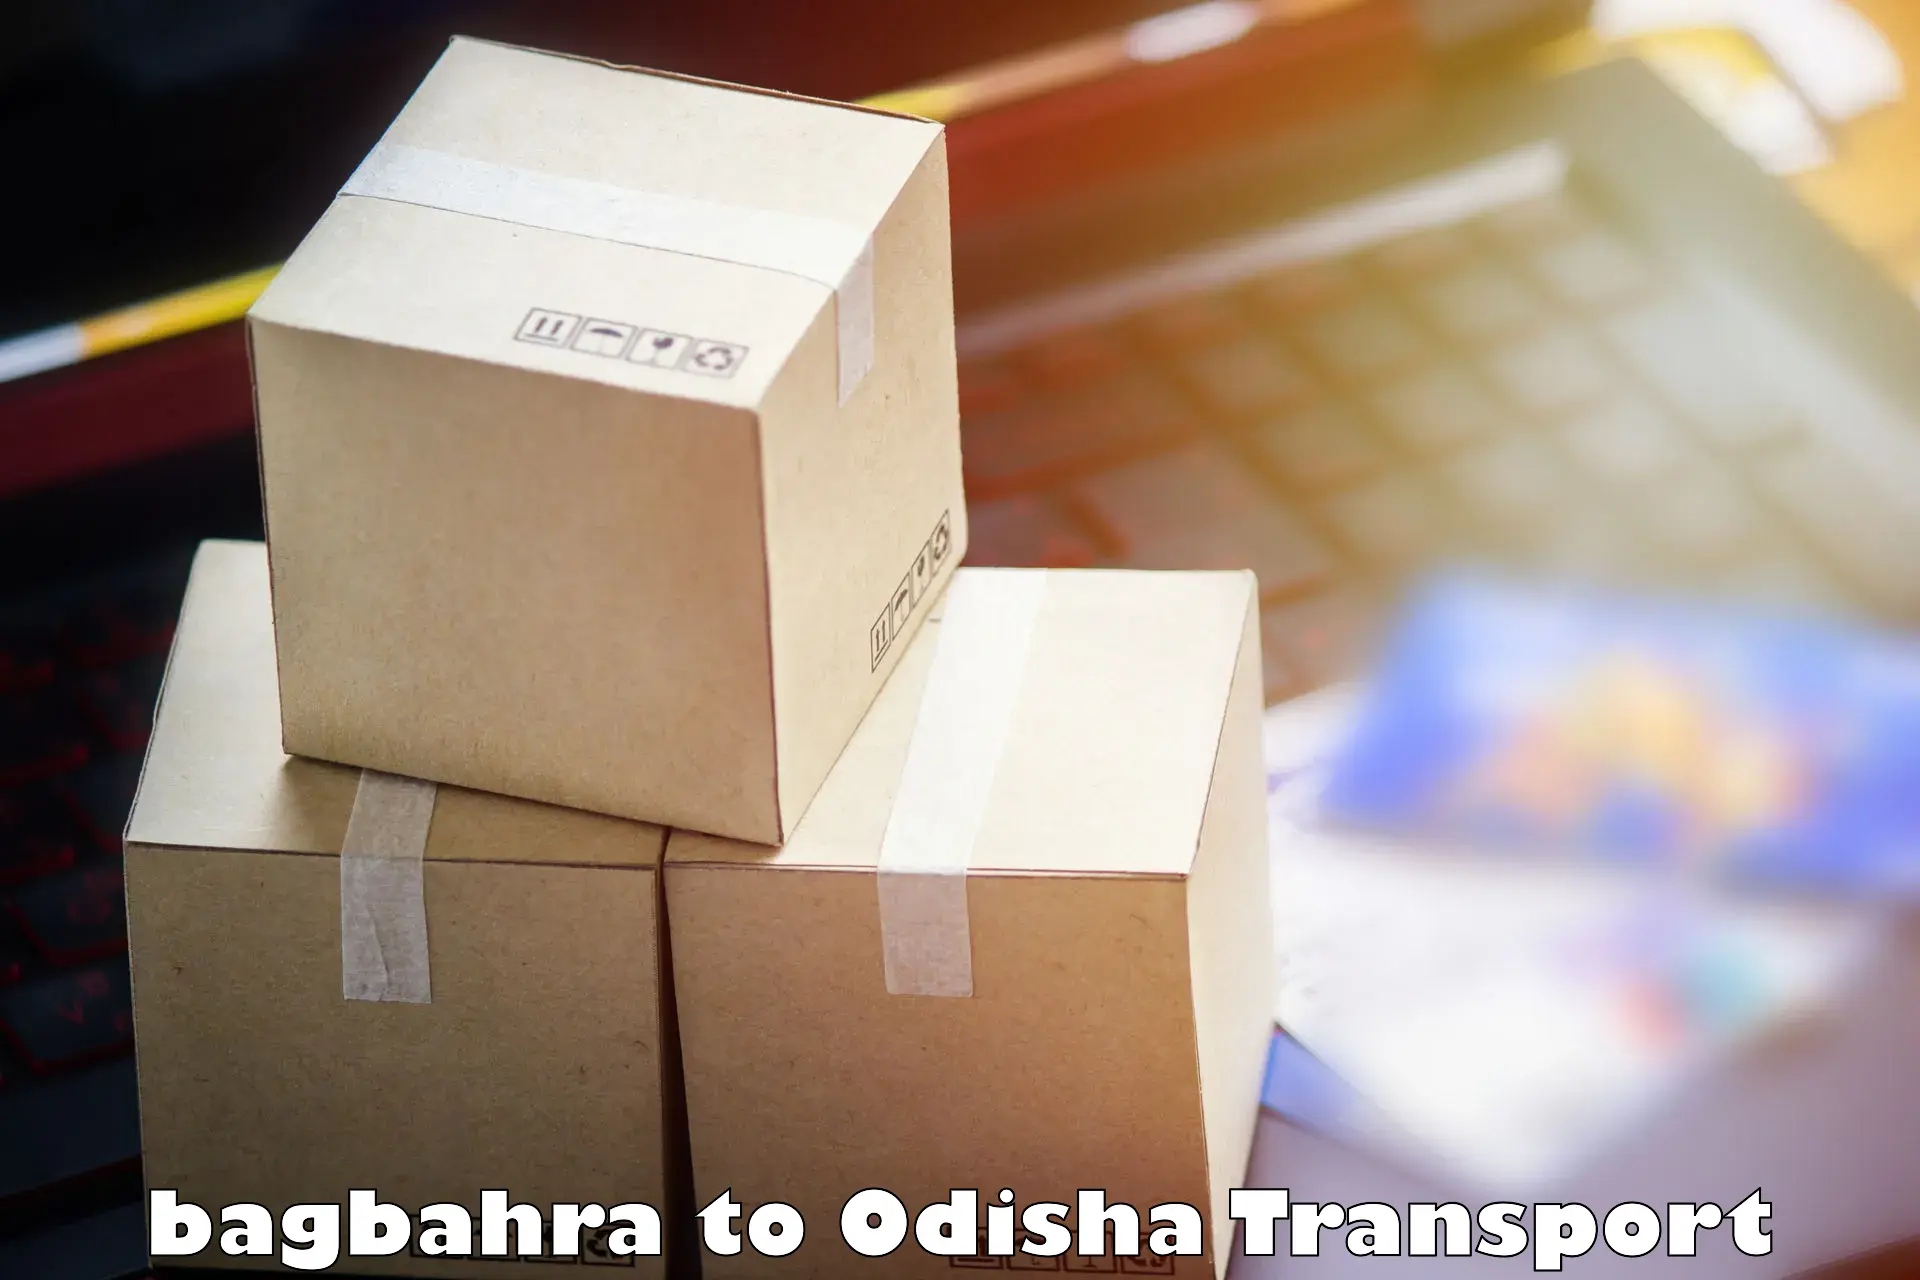 Transport in sharing bagbahra to Agarpada